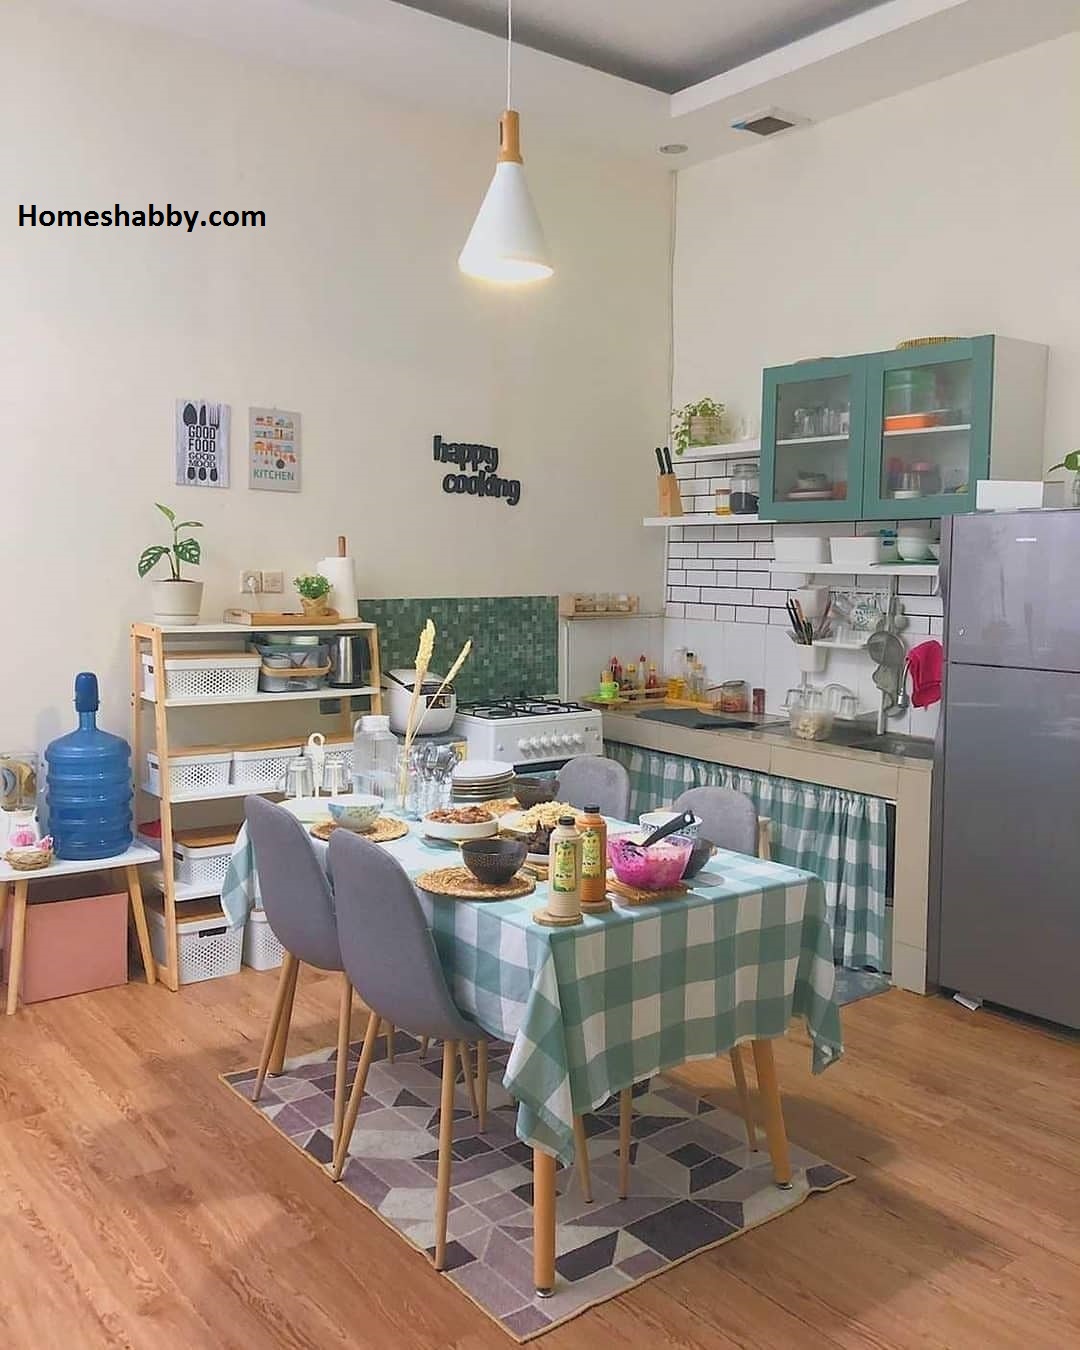 7 Ide Inspirasi Desain Dapur dan Ruang Makan Minimalis ~ Homeshabby.com